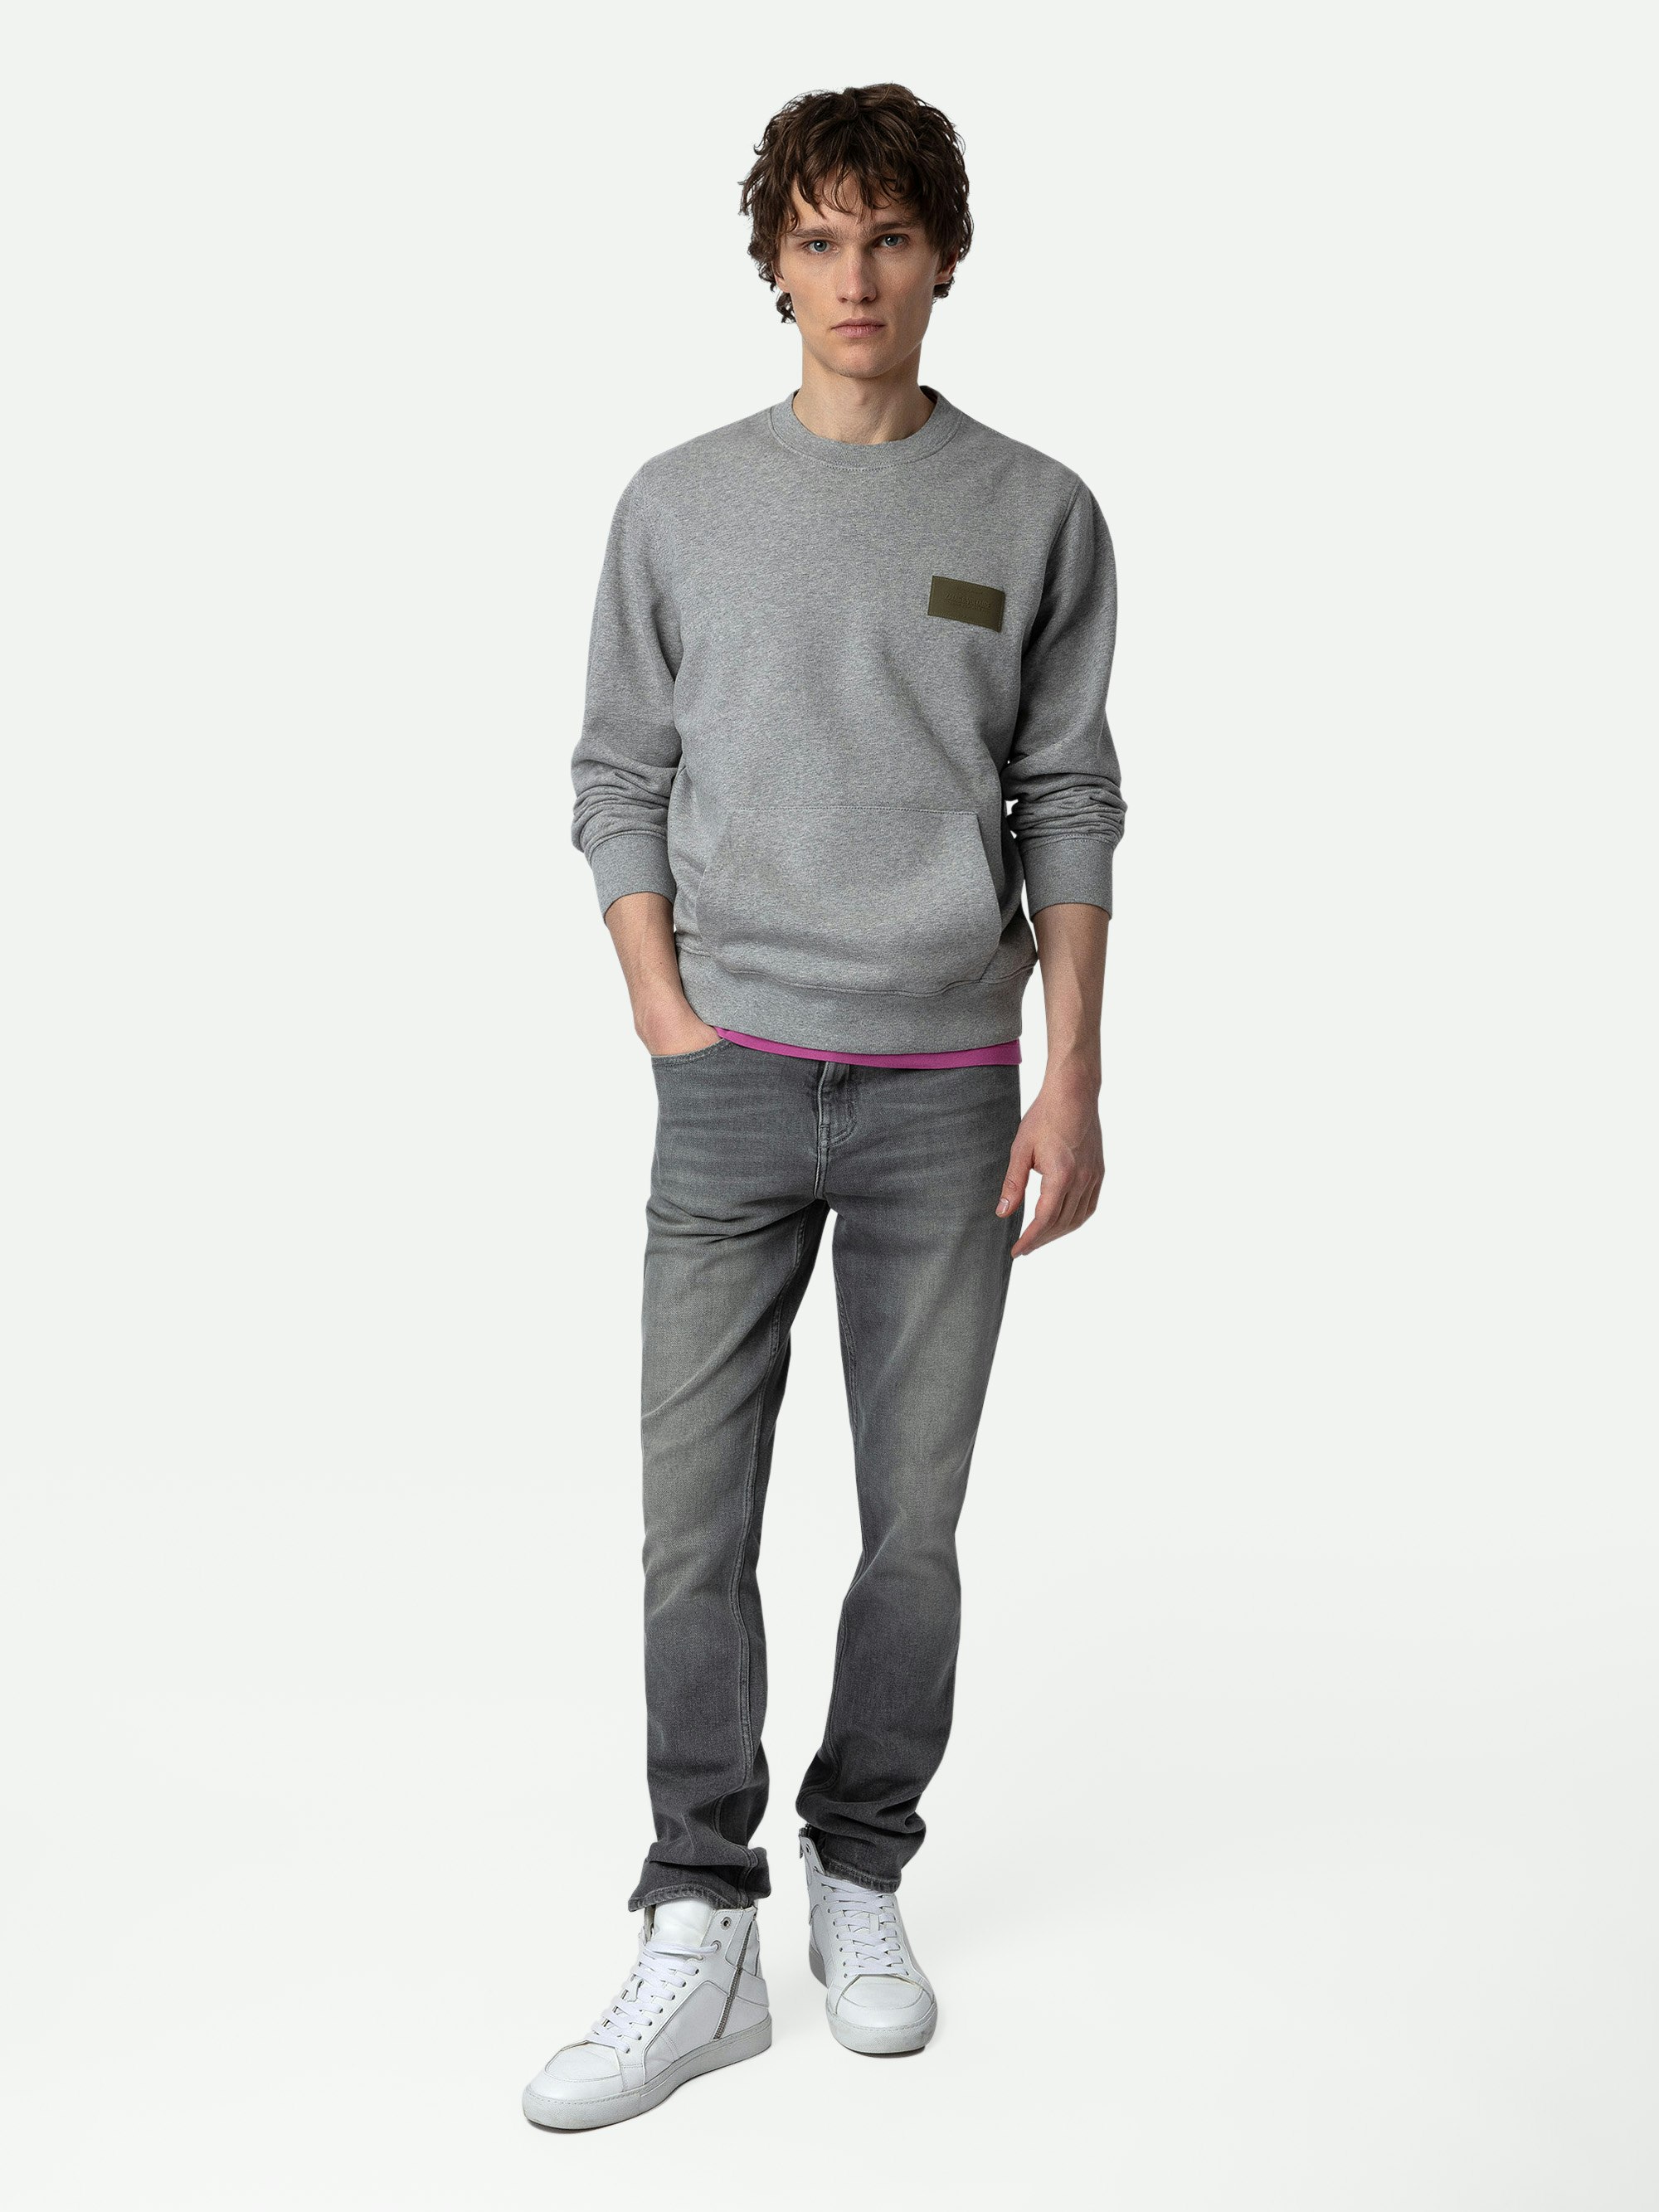 Sweatshirt Aime - Graumeliertes Sweatshirt mit Rundhalsausschnitt, langen Ärmeln und Patch in Brusthöhe.